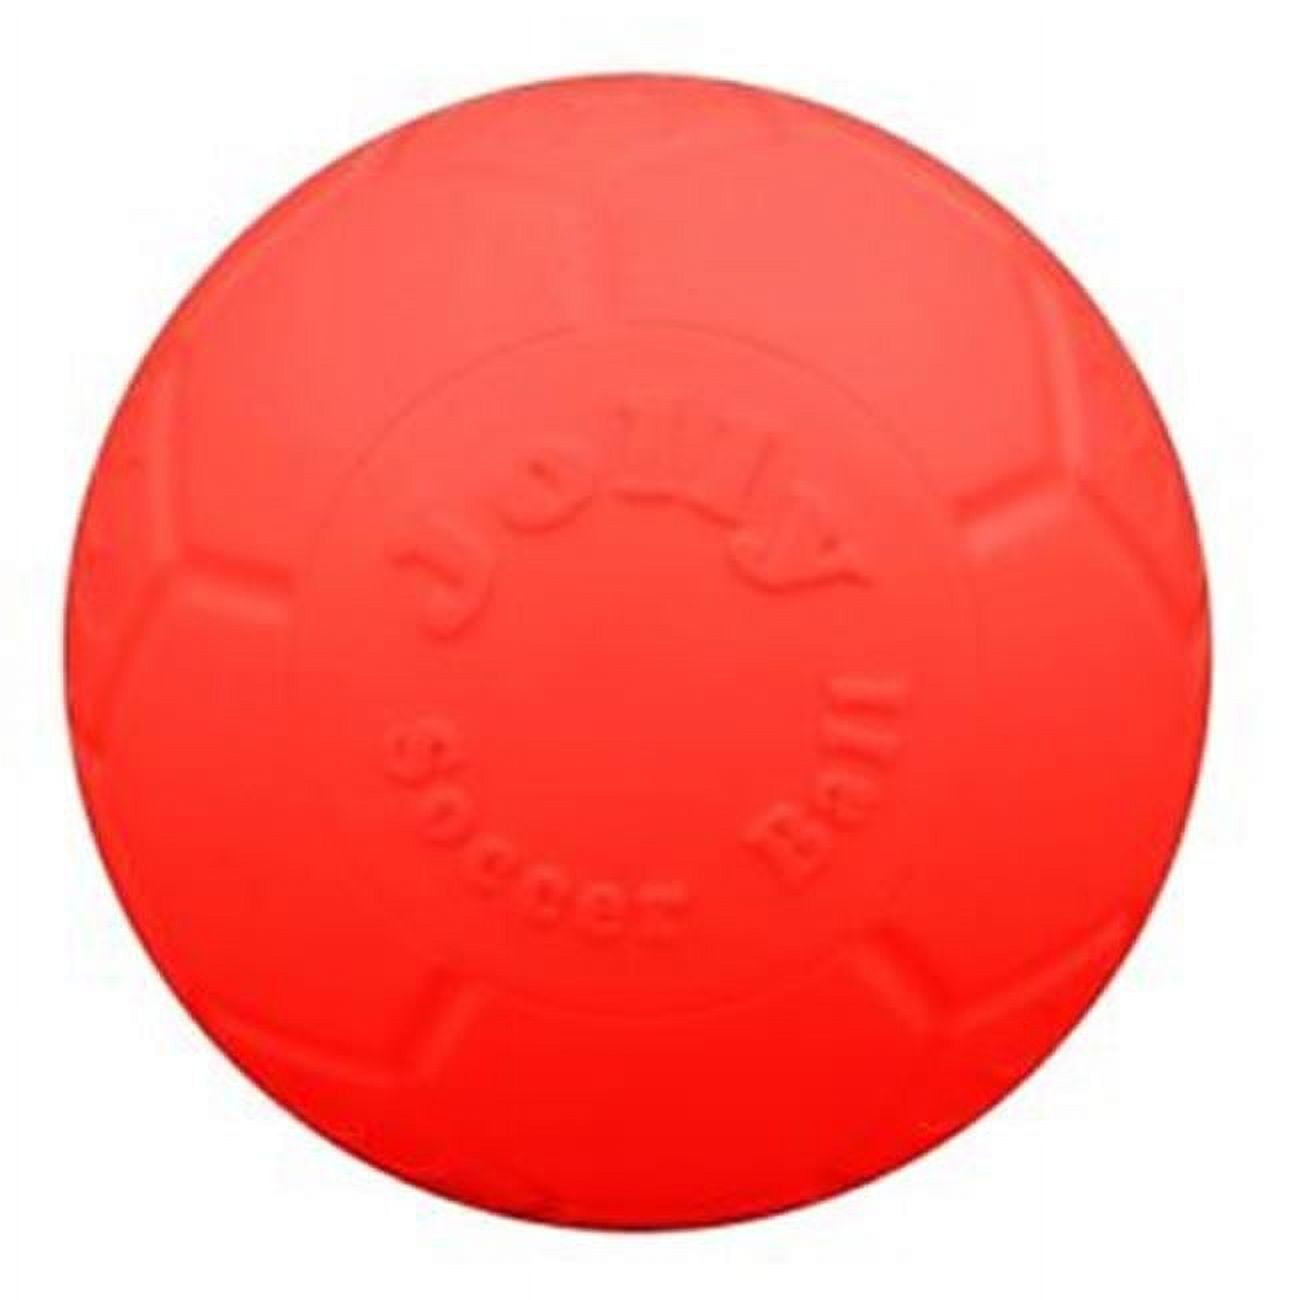 Jb72061 6 In. Jolly Soccer Ball, Orange